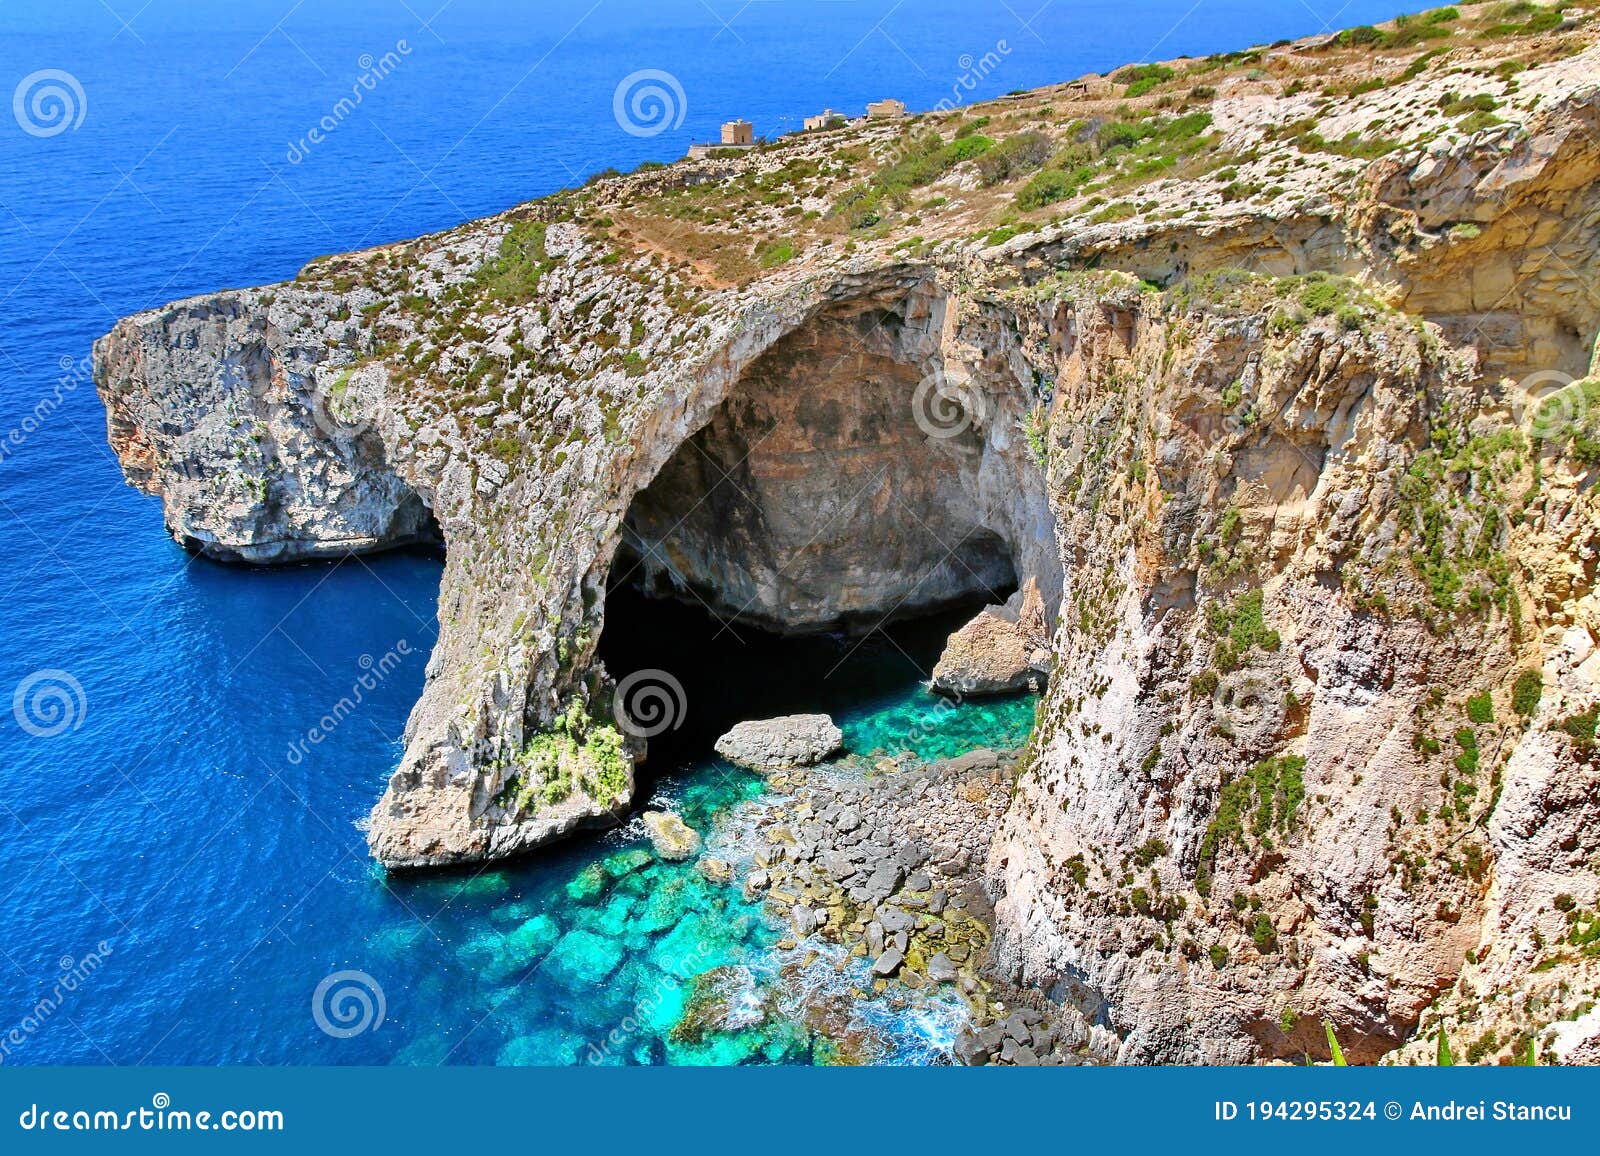 malta coast blue grotto